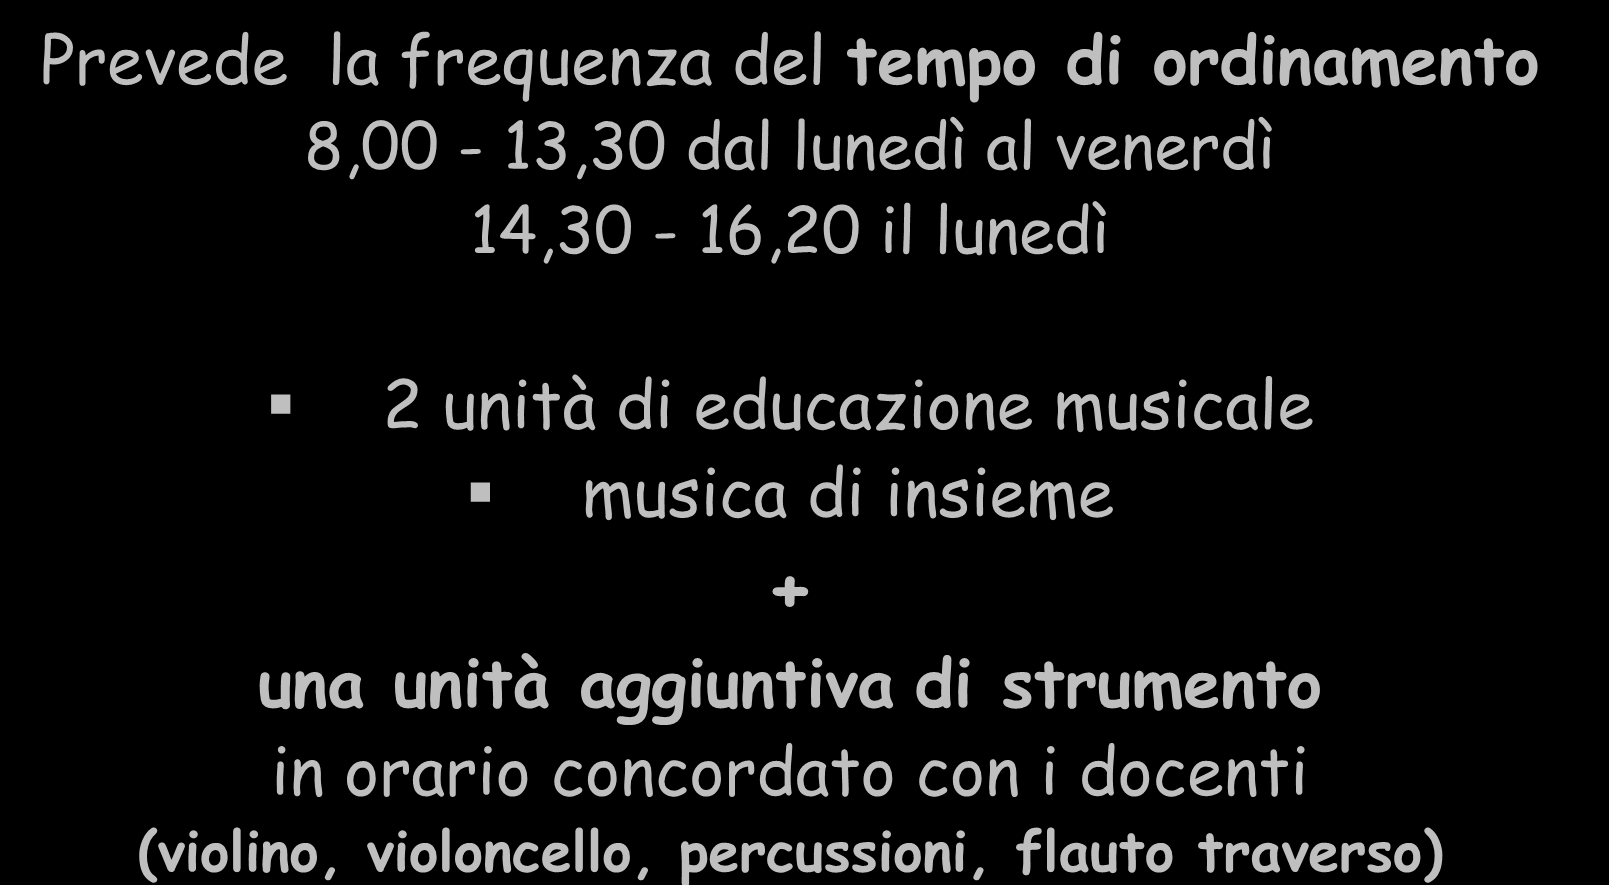 SEZIONE A INDIRIZZO MUSICALE Prevede la frequenza del tempo di ordinamento 8,00-13,30 dal lunedì al venerdì 14,30-16,20 il lunedì 2 unità di educazione musicale